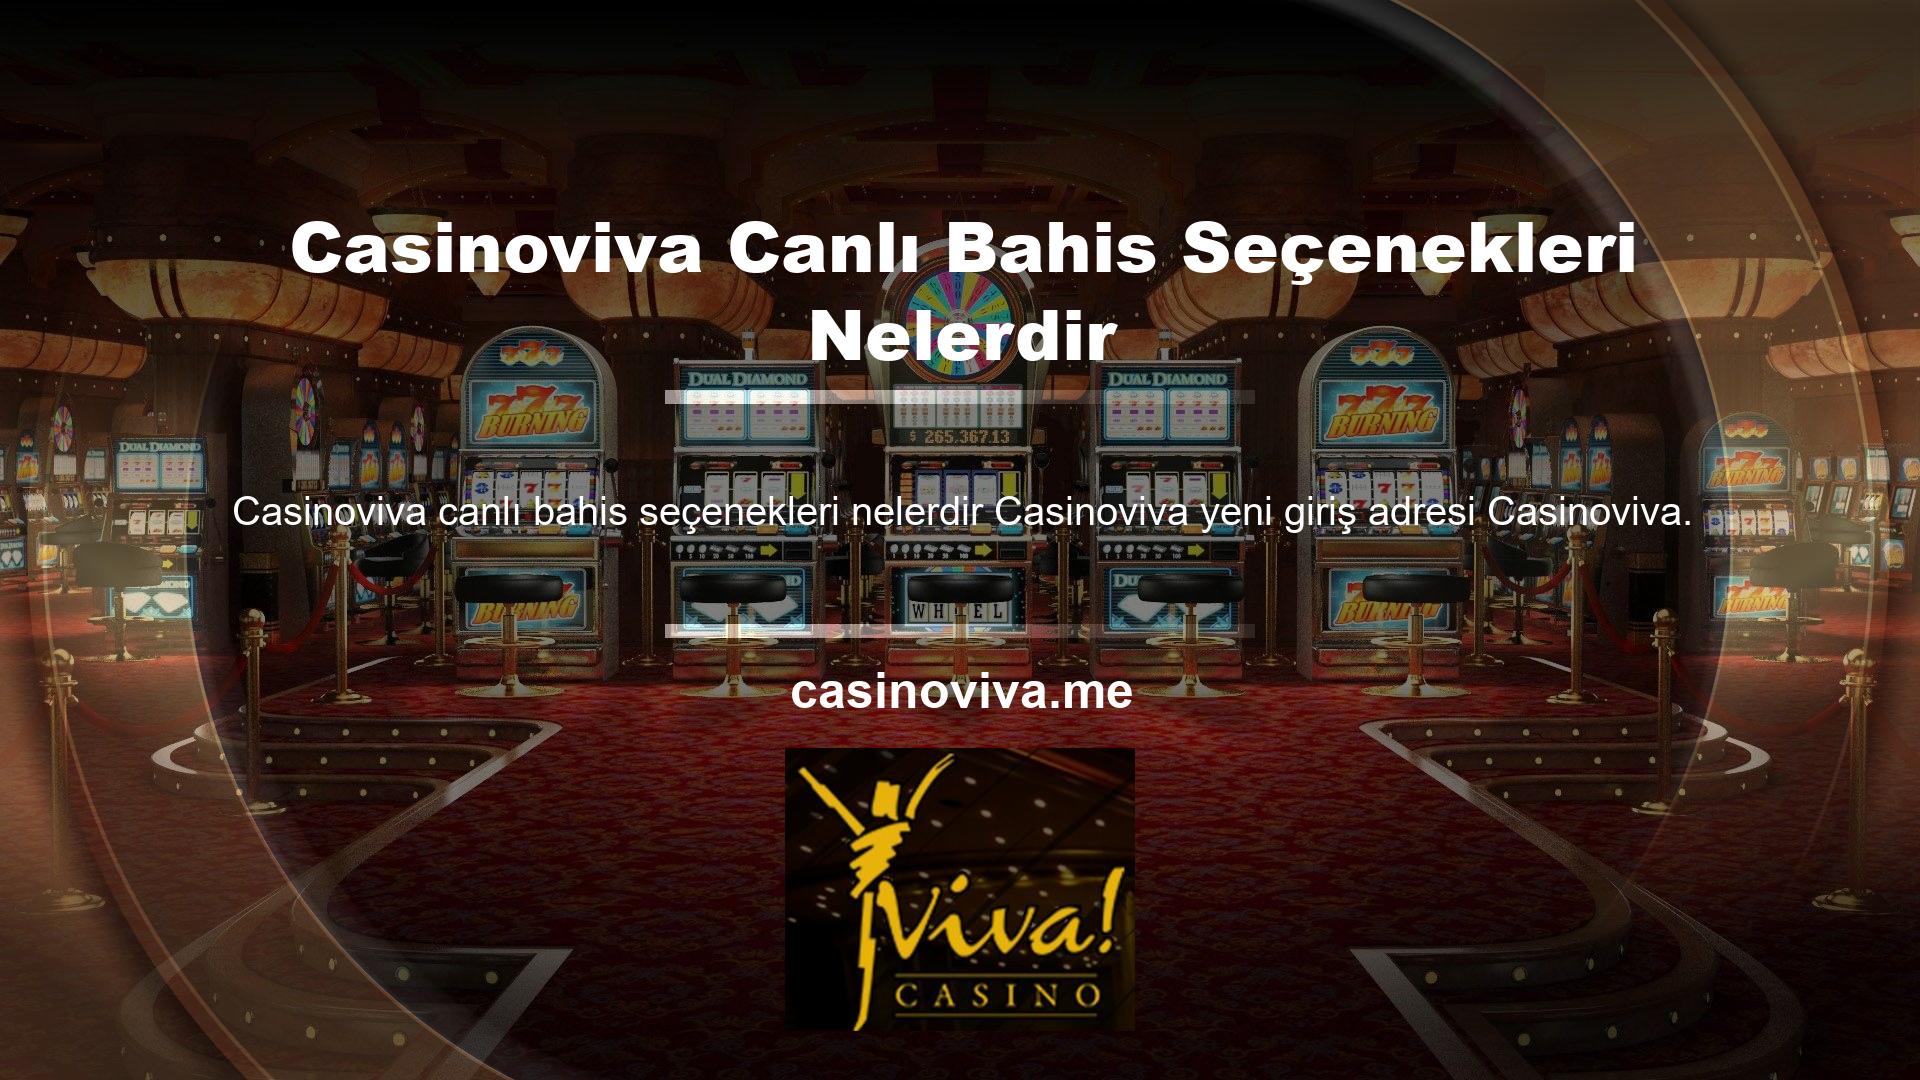 Casinoviva çevrimiçi canlı bahis platformu, daha önce erişilemeyen premium uygulamalar yaratarak üyelerinin gereksinimlerine cevap veren canlı bahis sitelerinden biri olarak kabul edilmektedir